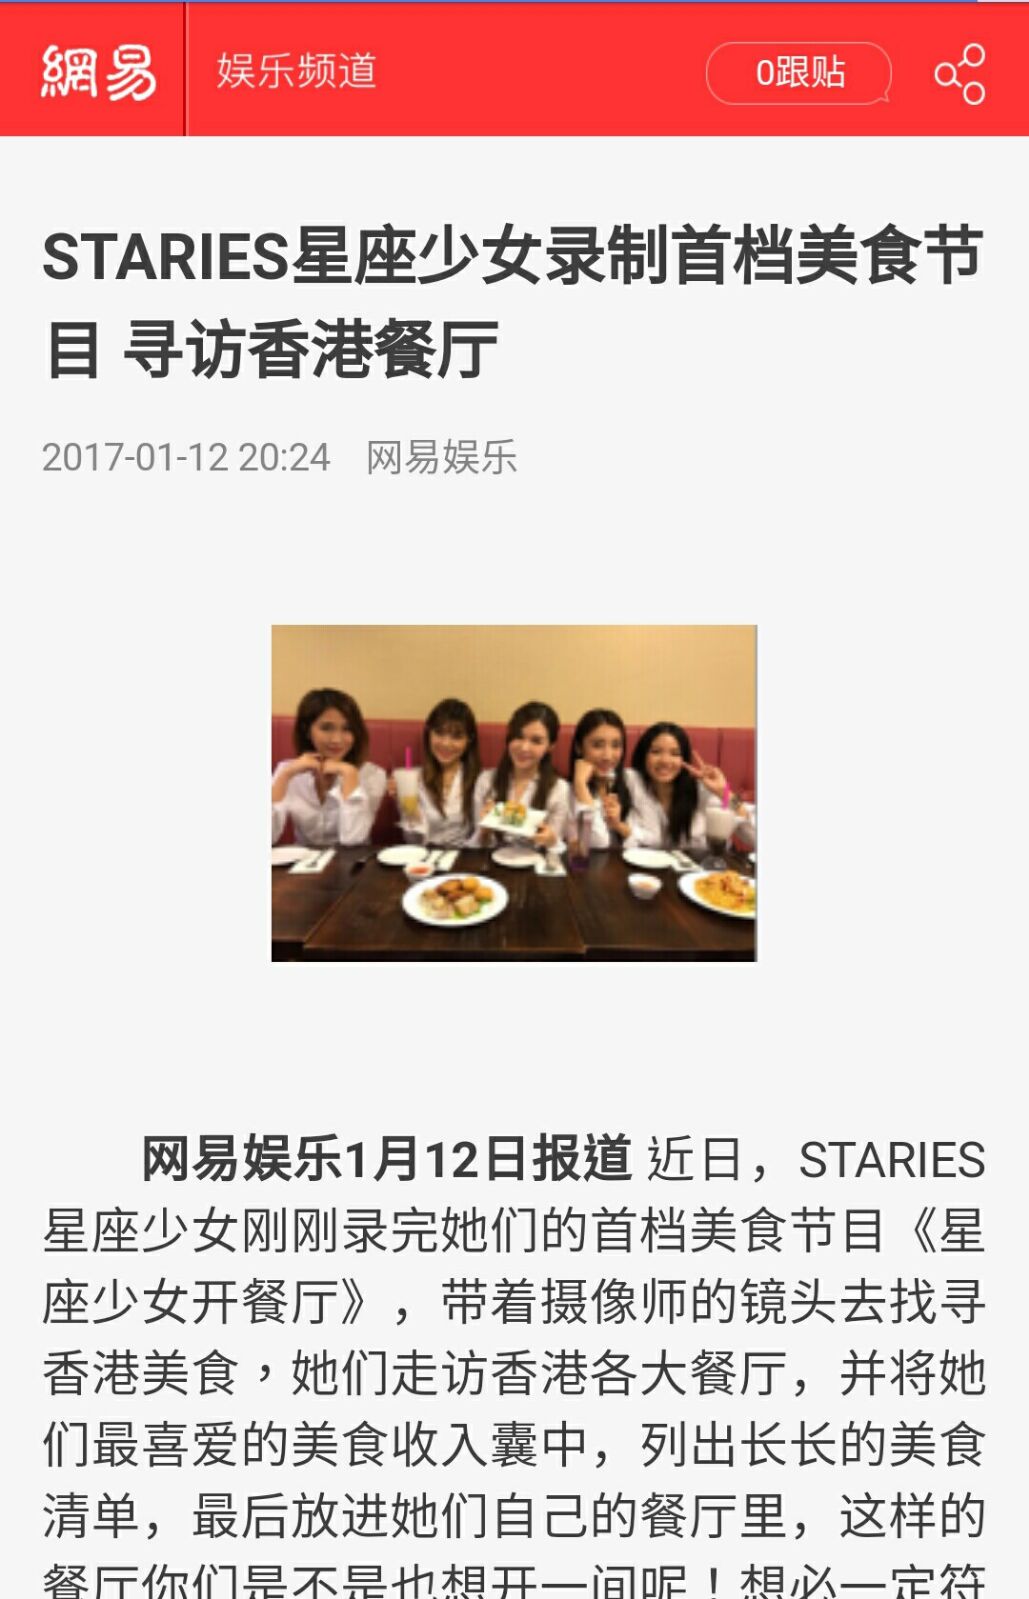 星座少女Staries  演藝人傳媒報導: STARIES星座少女录制首档美食节目 寻访香港餐厅